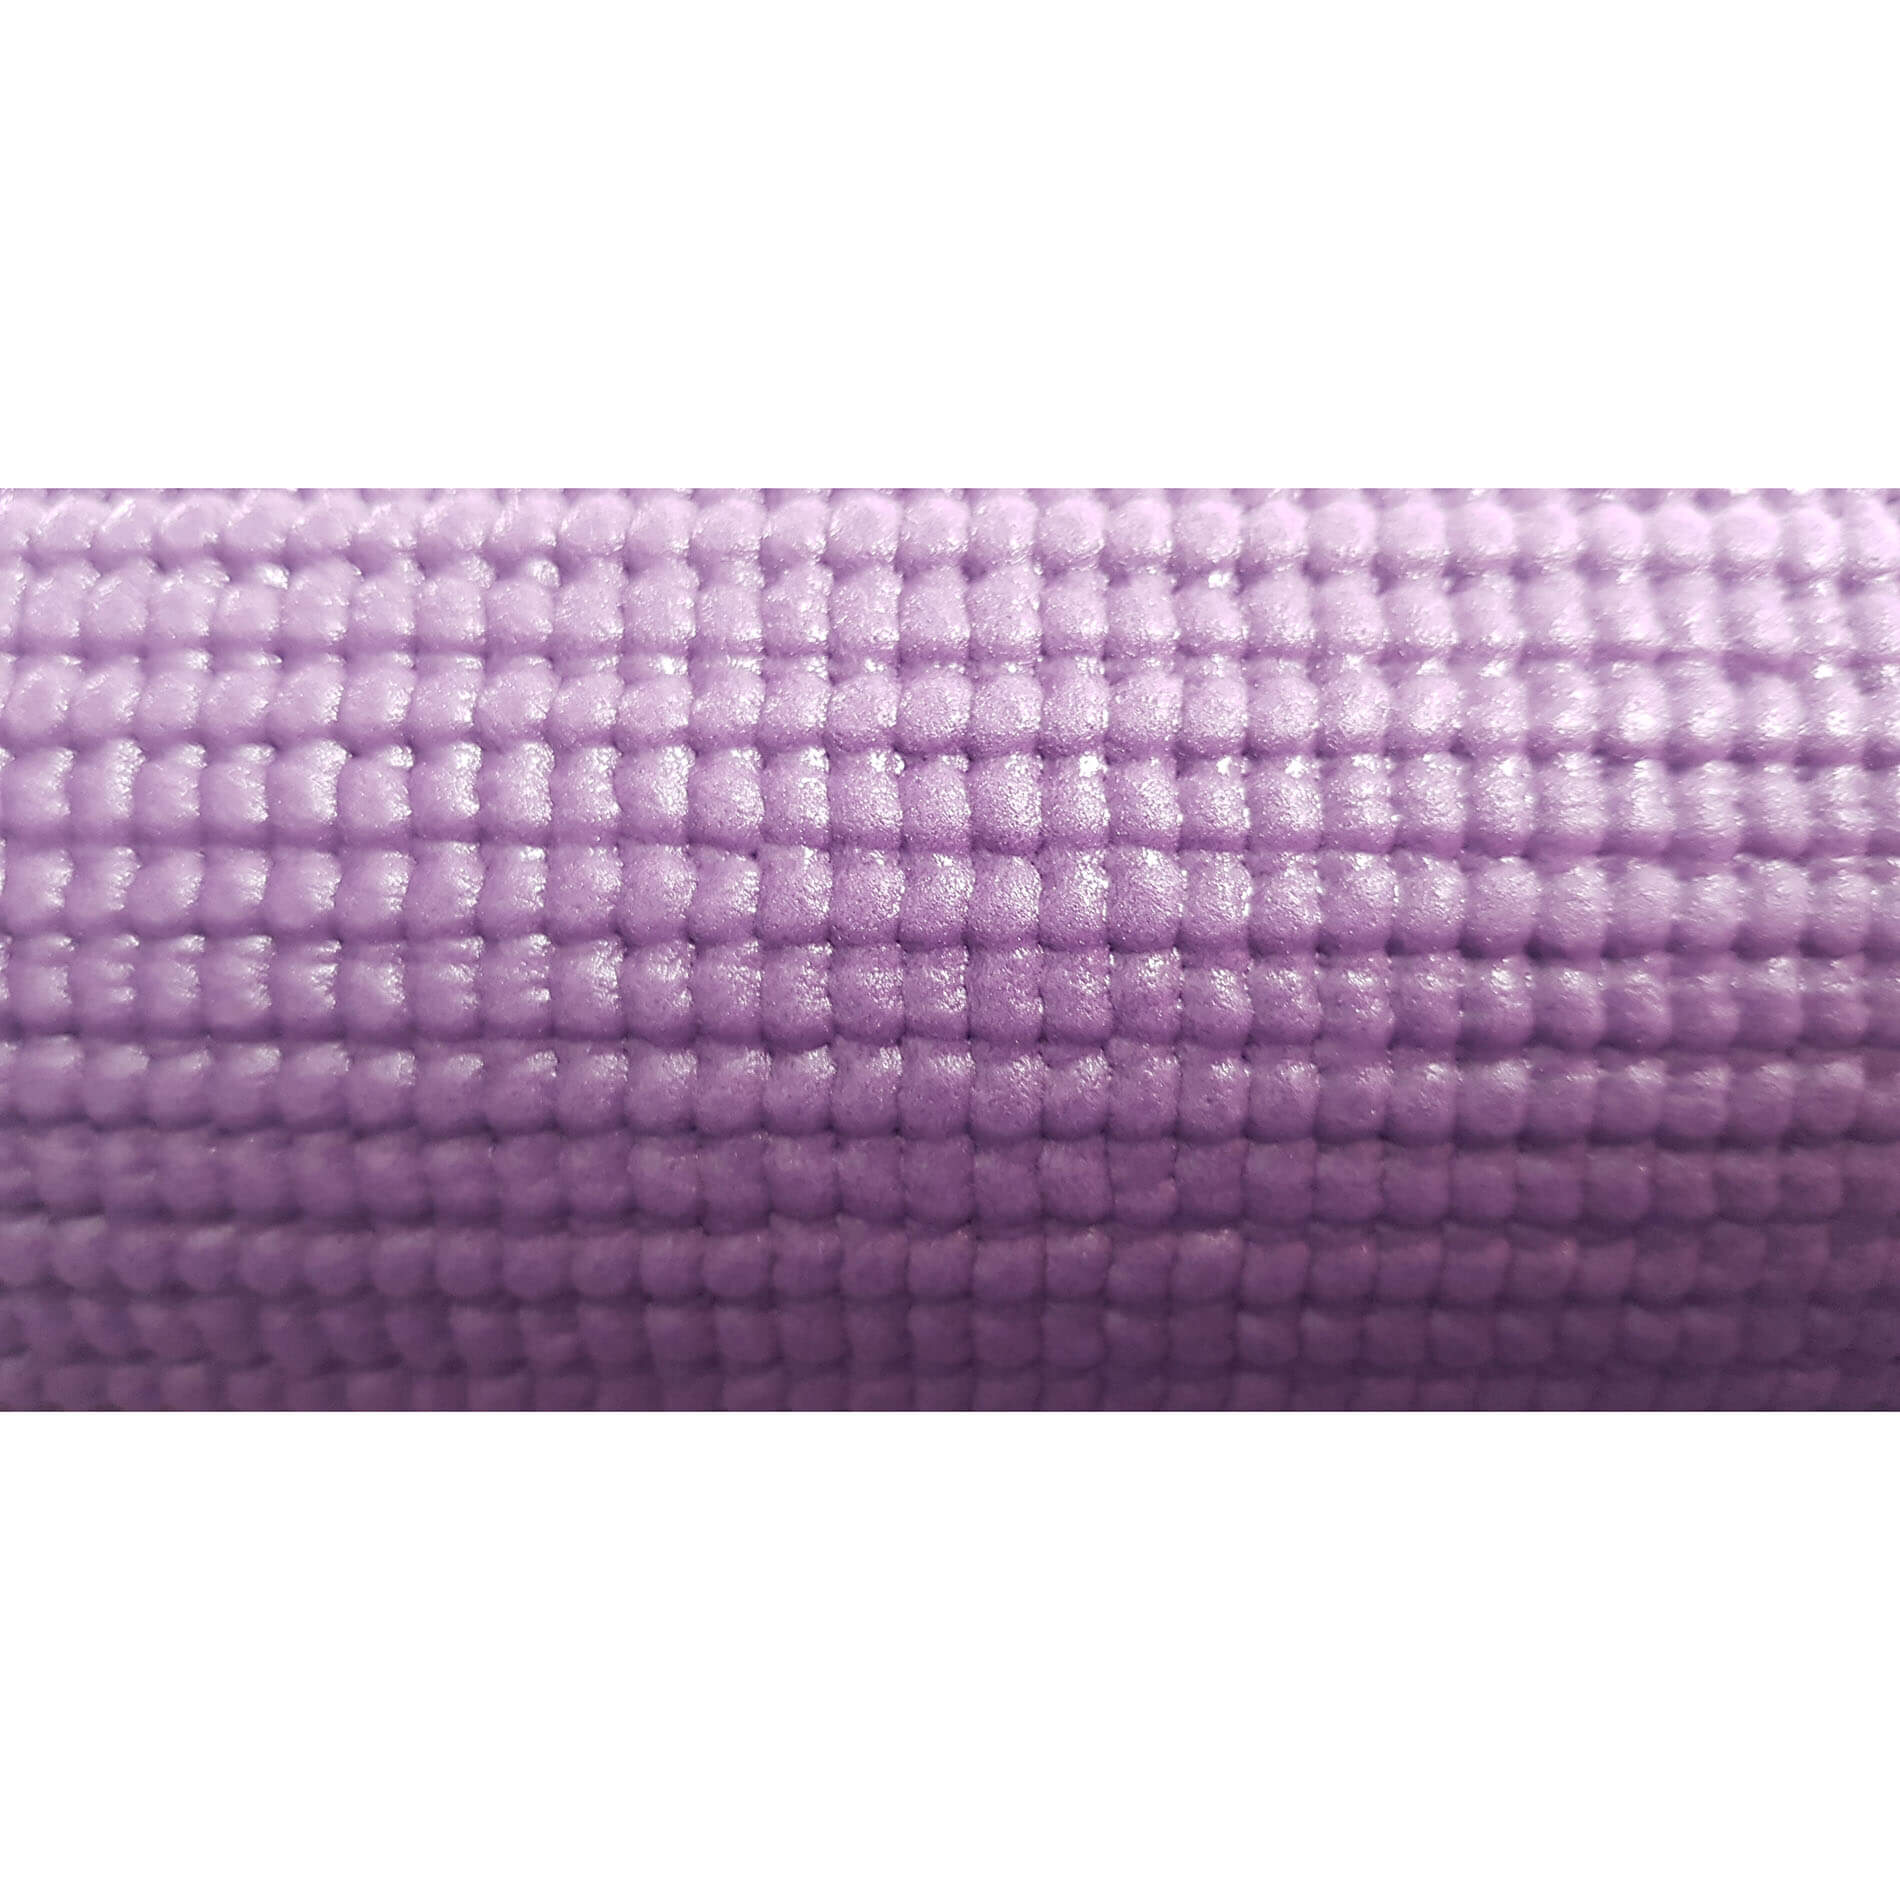 PVC Yogamat - Fitnessmat 4mm dik